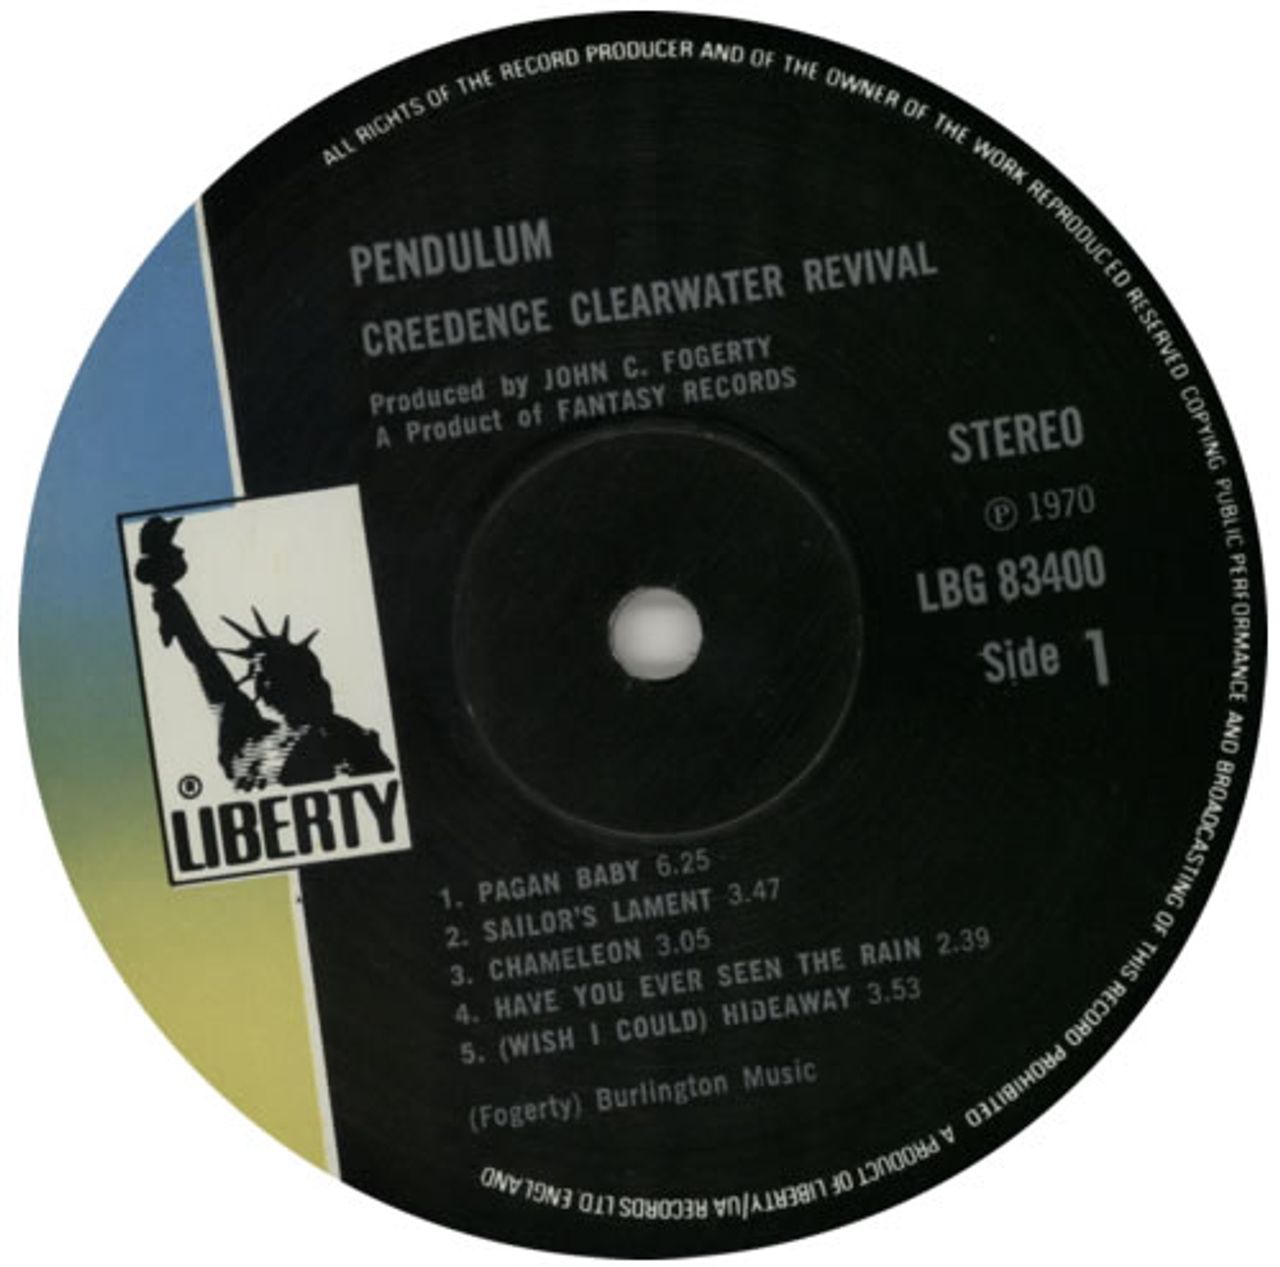 Creedence Clearwater Revival Pendulum - EX UK Vinyl LP — RareVinyl.com